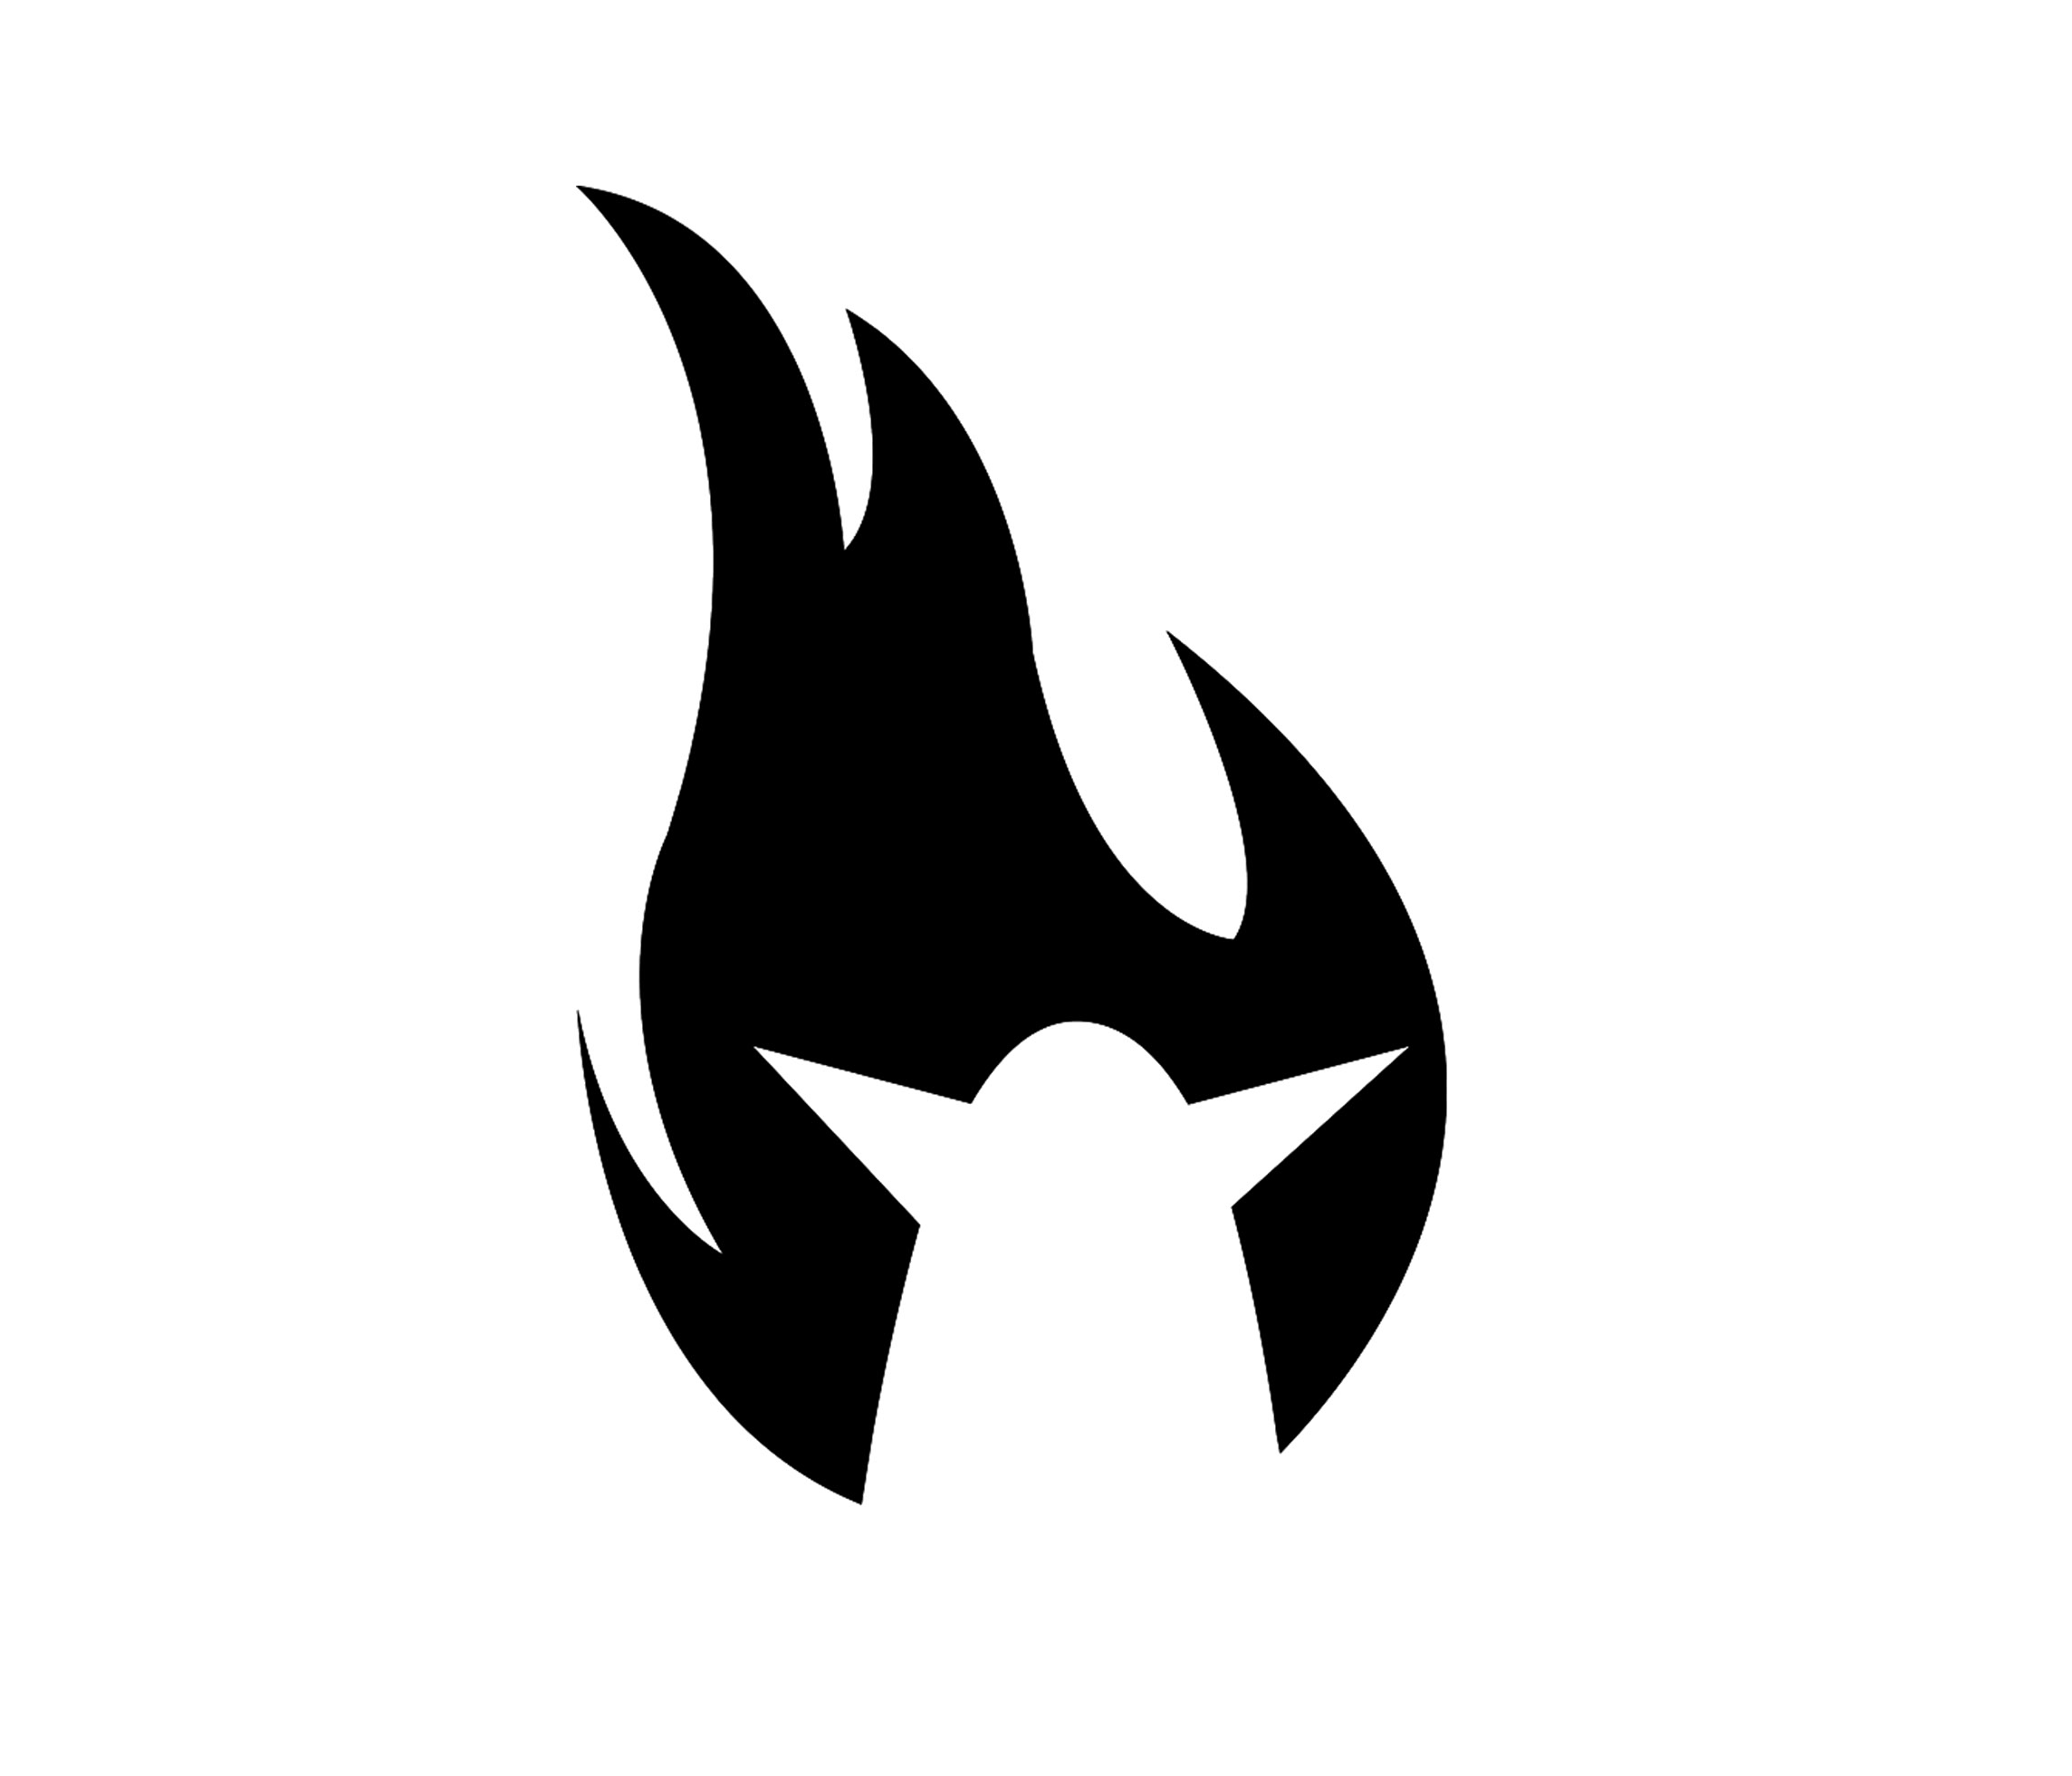 Logotip del ball de diables.